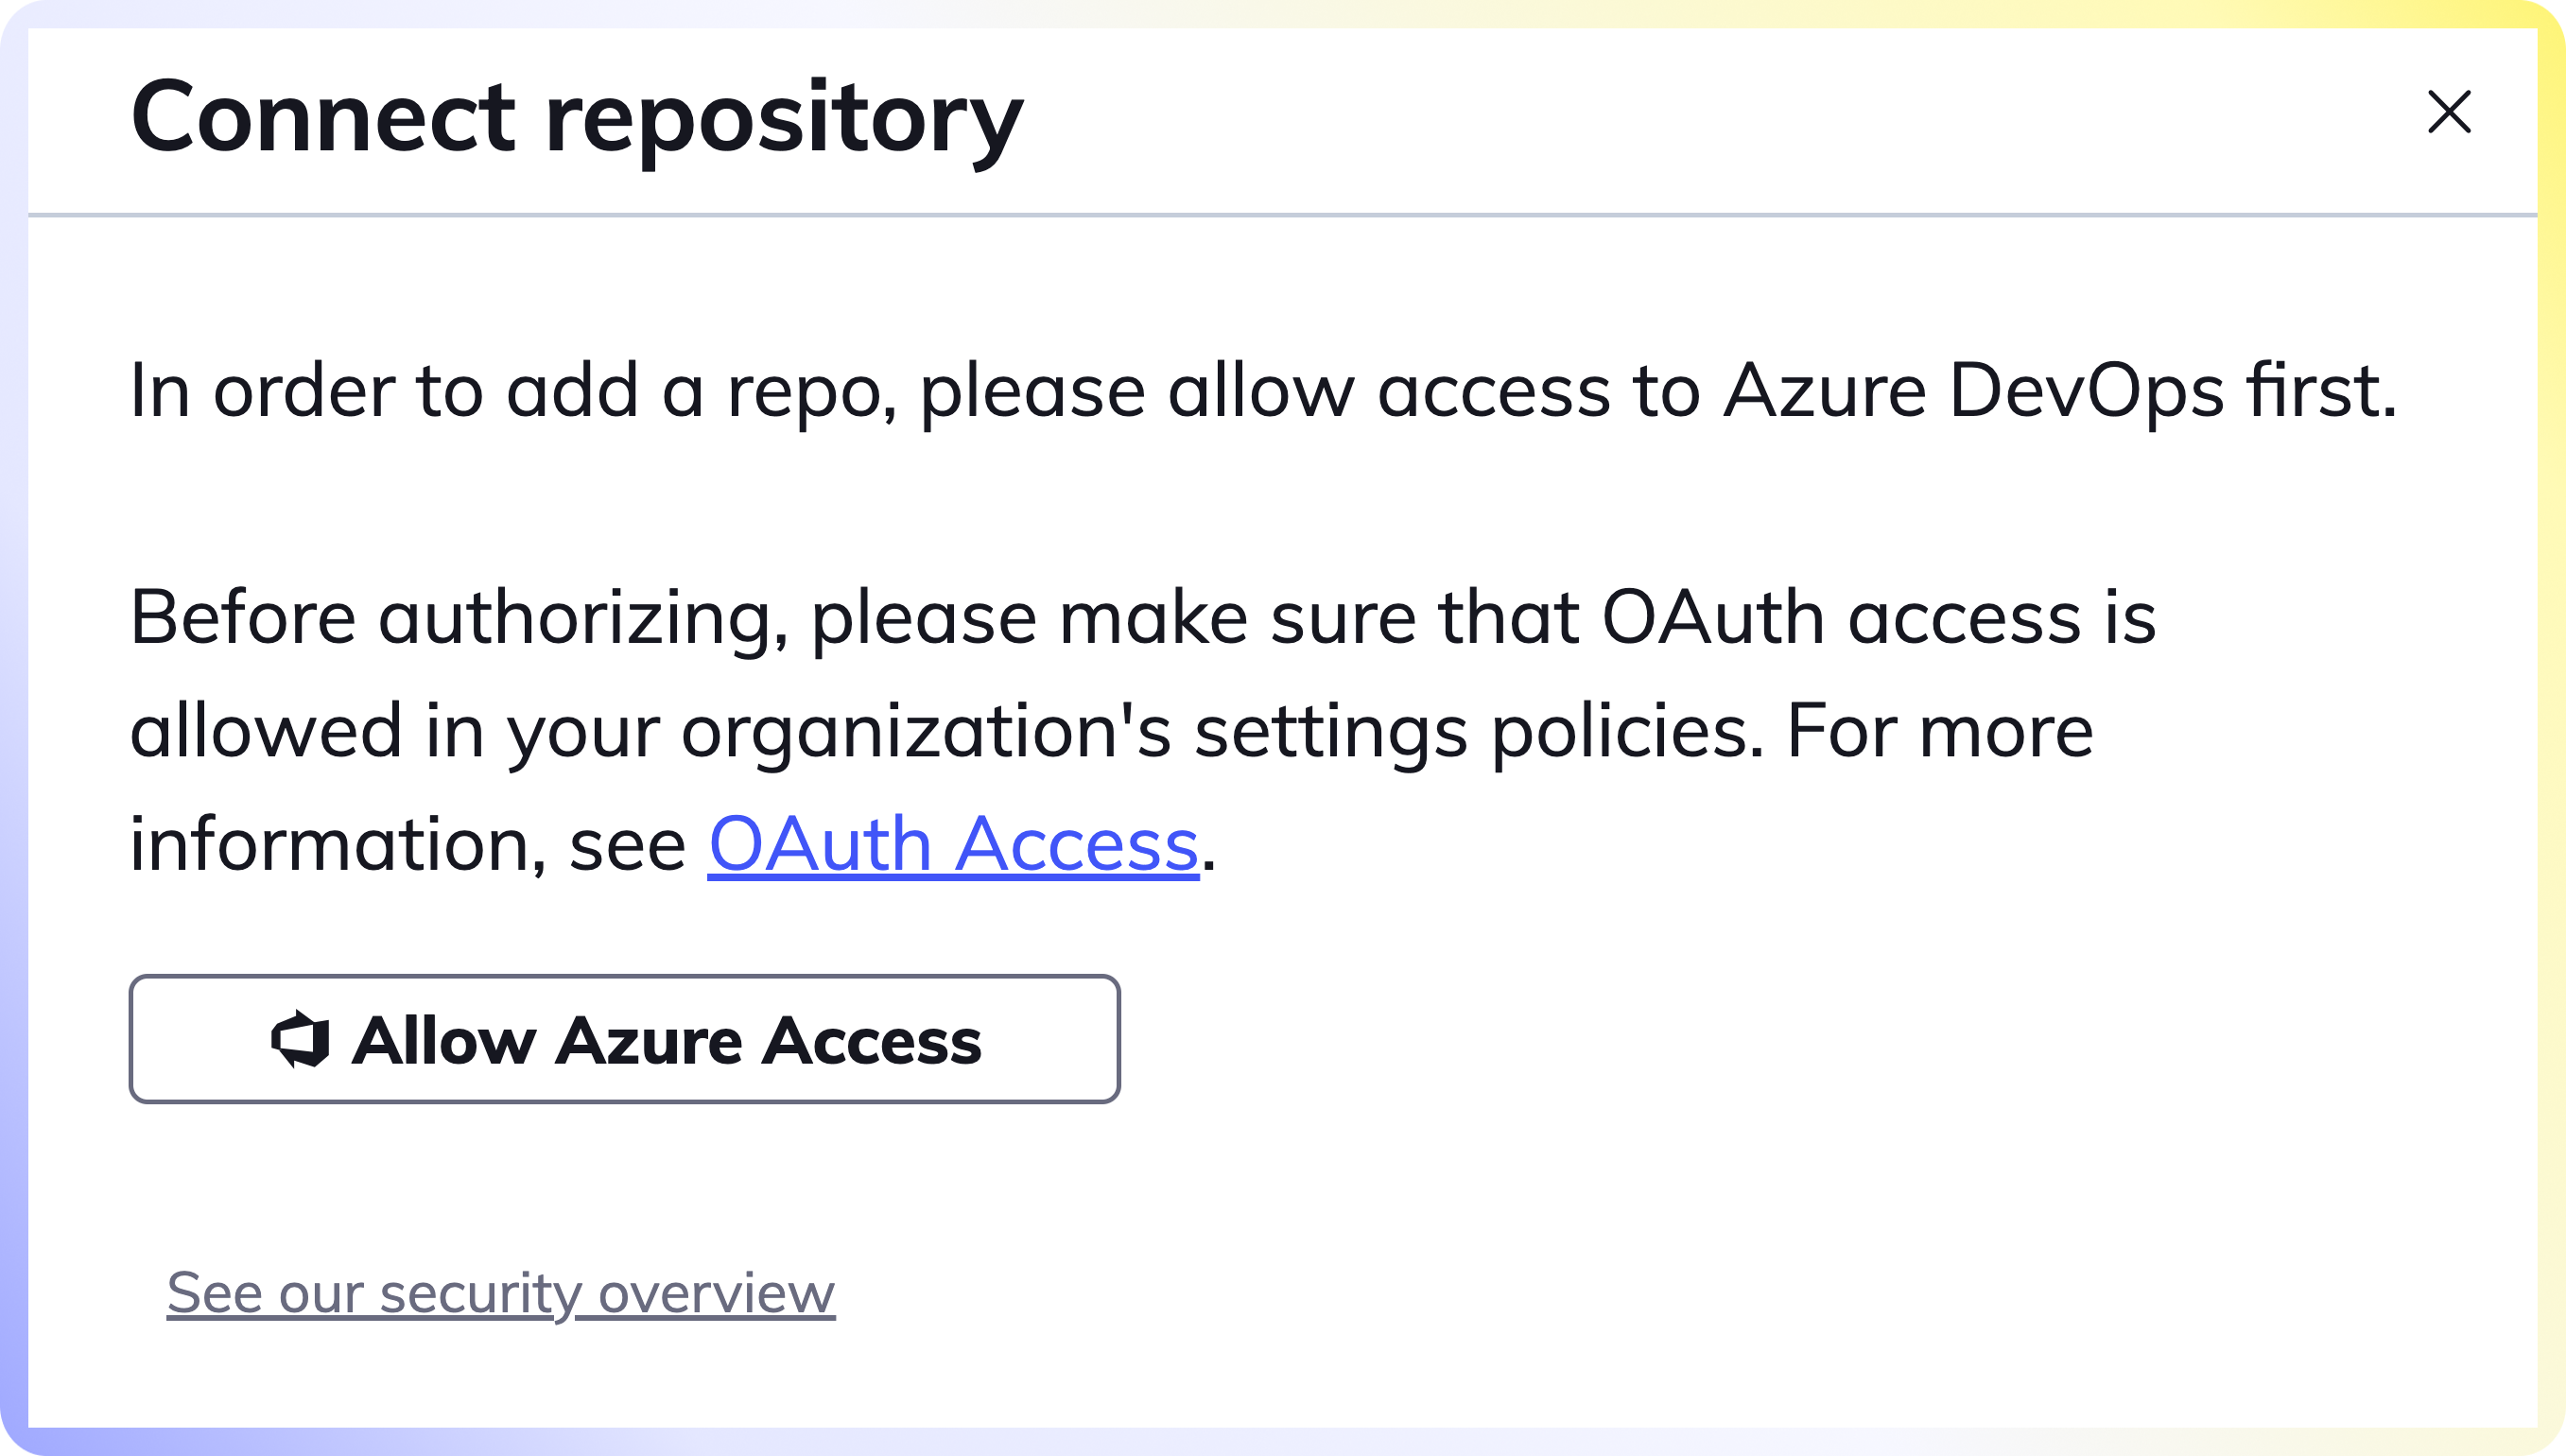 Allow Azure Access